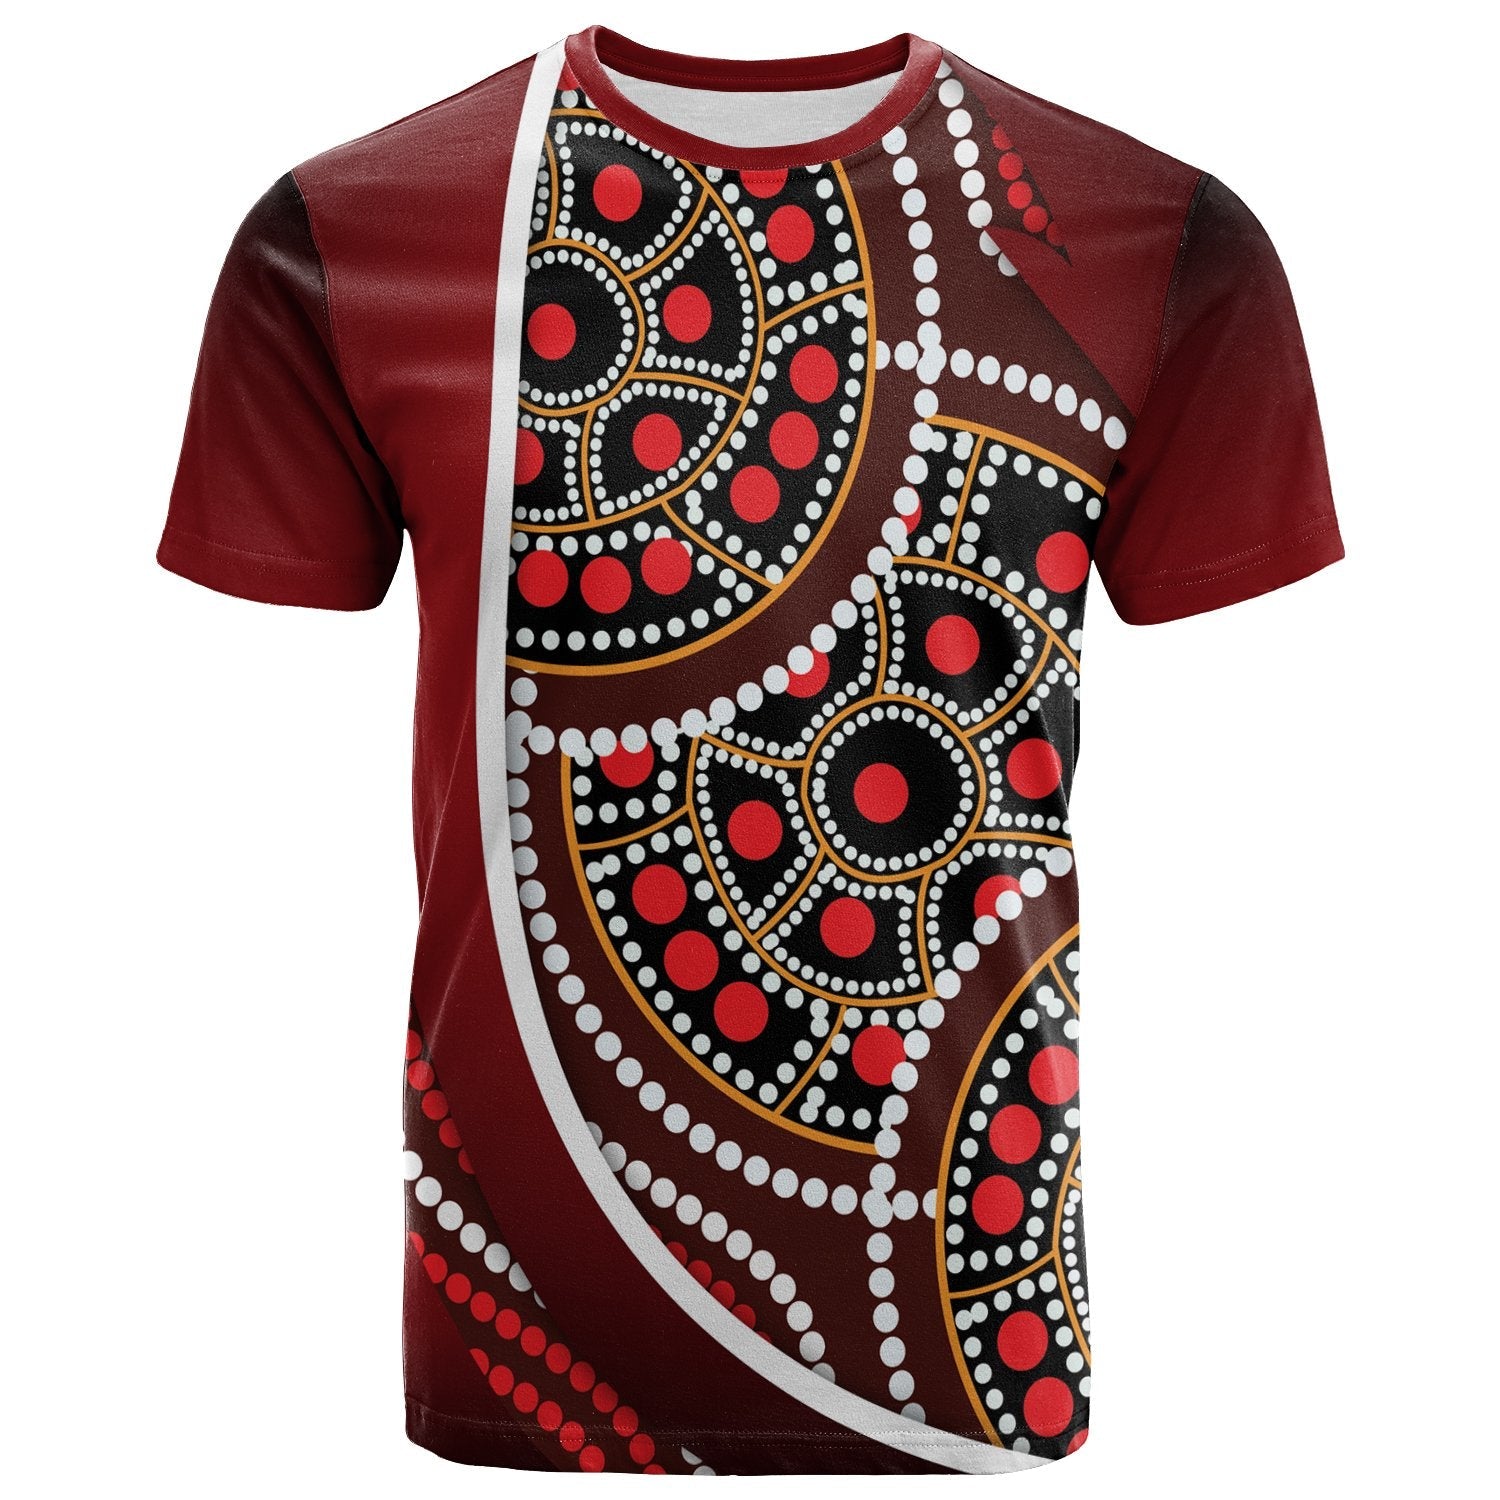 t-shirt-aboriginal-tortoiseshell-dot-panting